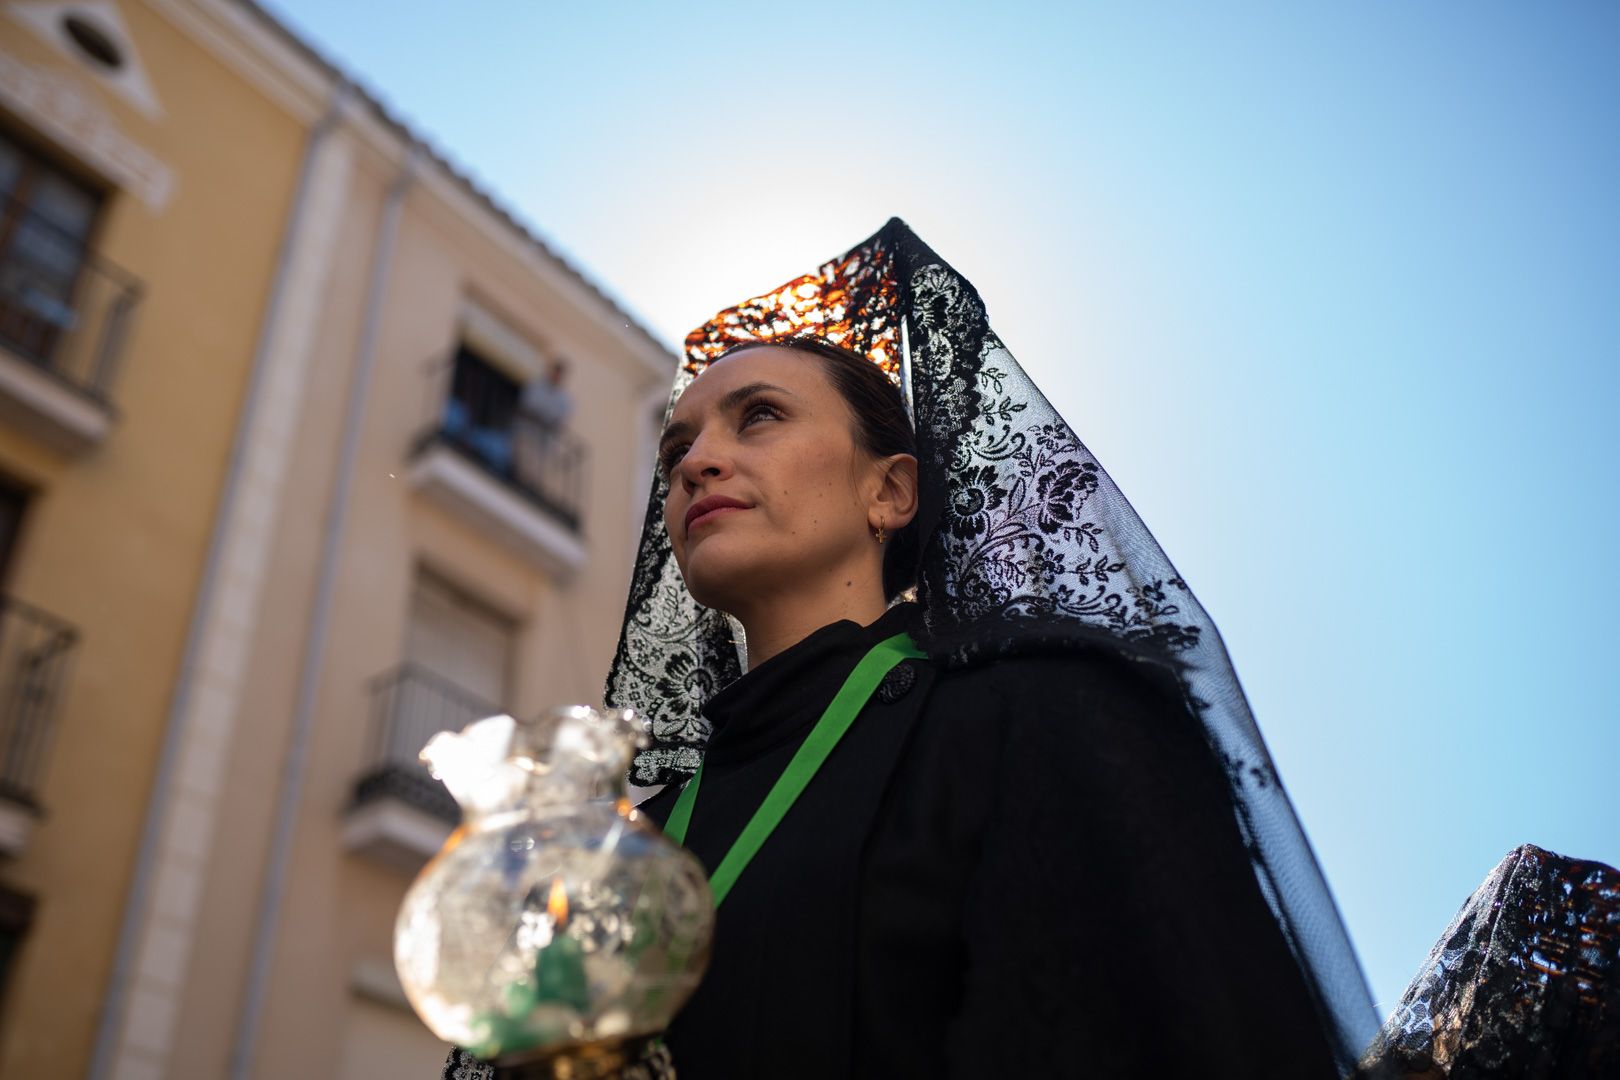 GALERÍA | Las mejores imágenes de la procesión de la Virgen de la Esperanza